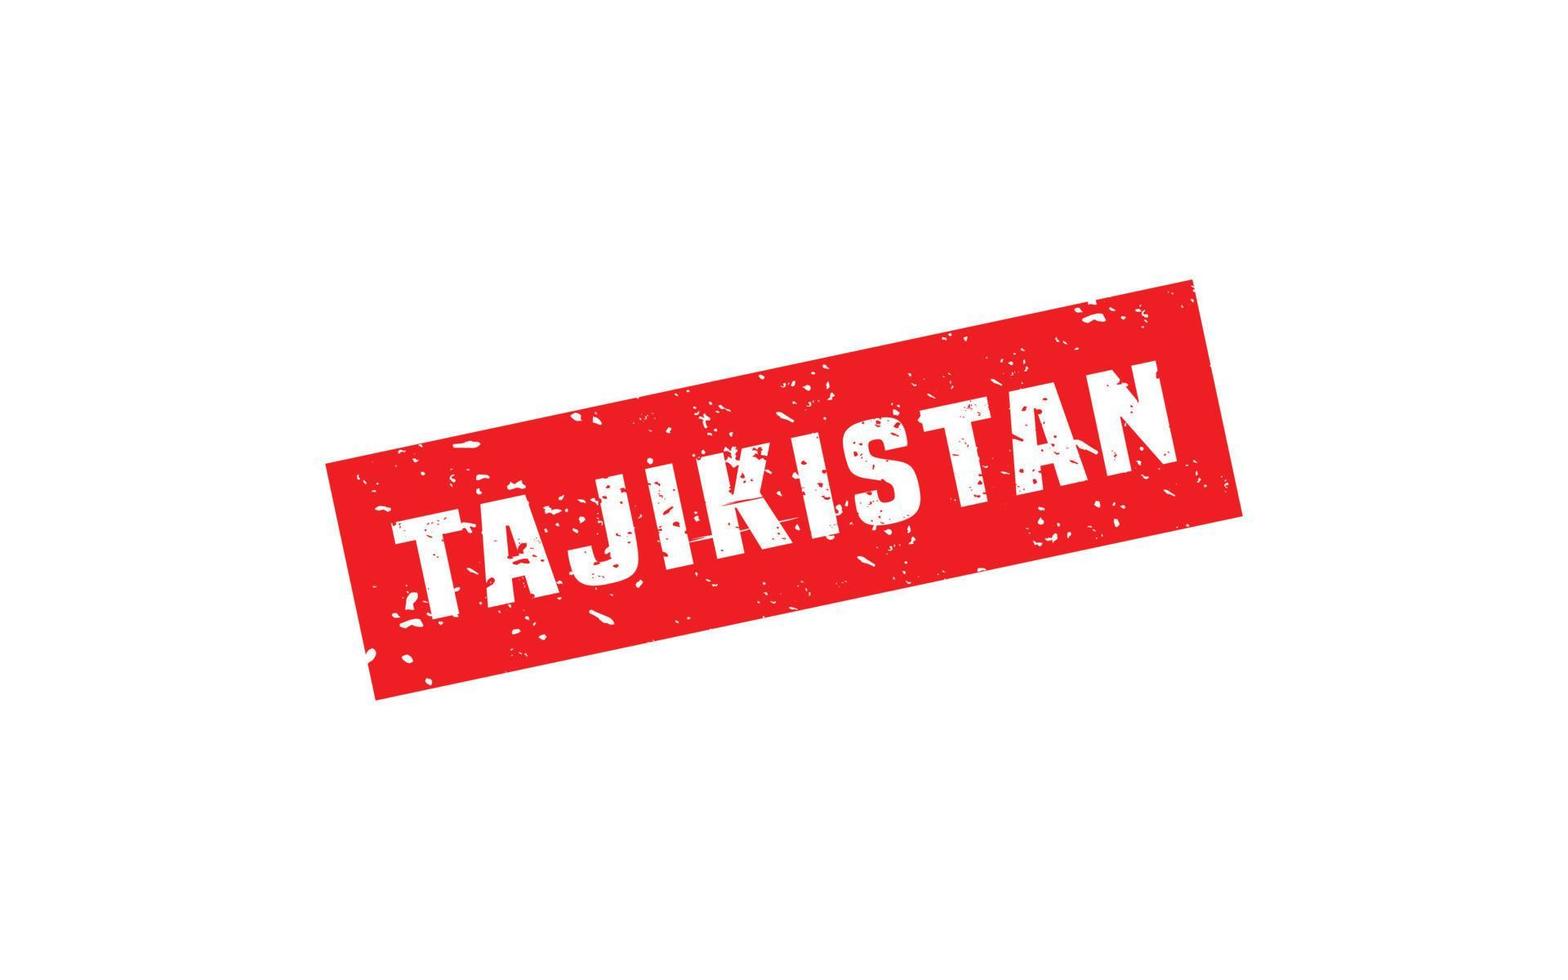 le tadjikistan timbre caoutchouc avec grunge style sur blanc Contexte vecteur